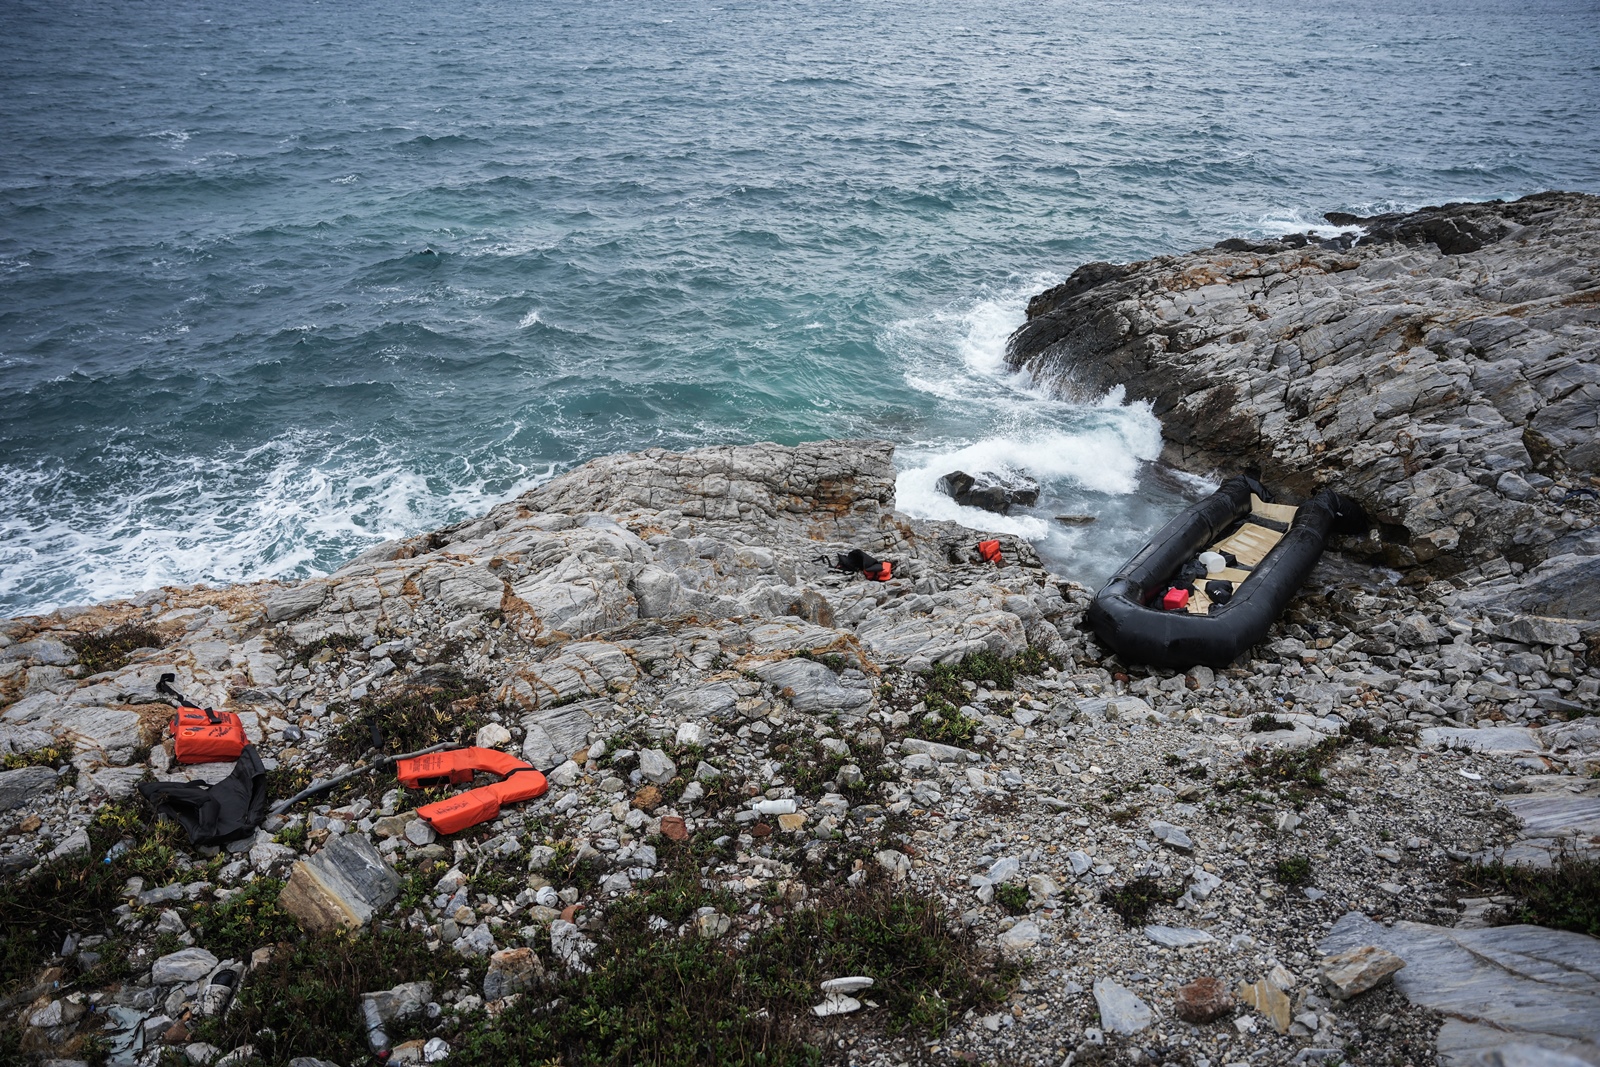 Κύπρος – μετανάστες: Τέσσερις άνθρωποι βρέθηκαν λιπόθυμοι σε βάρκα